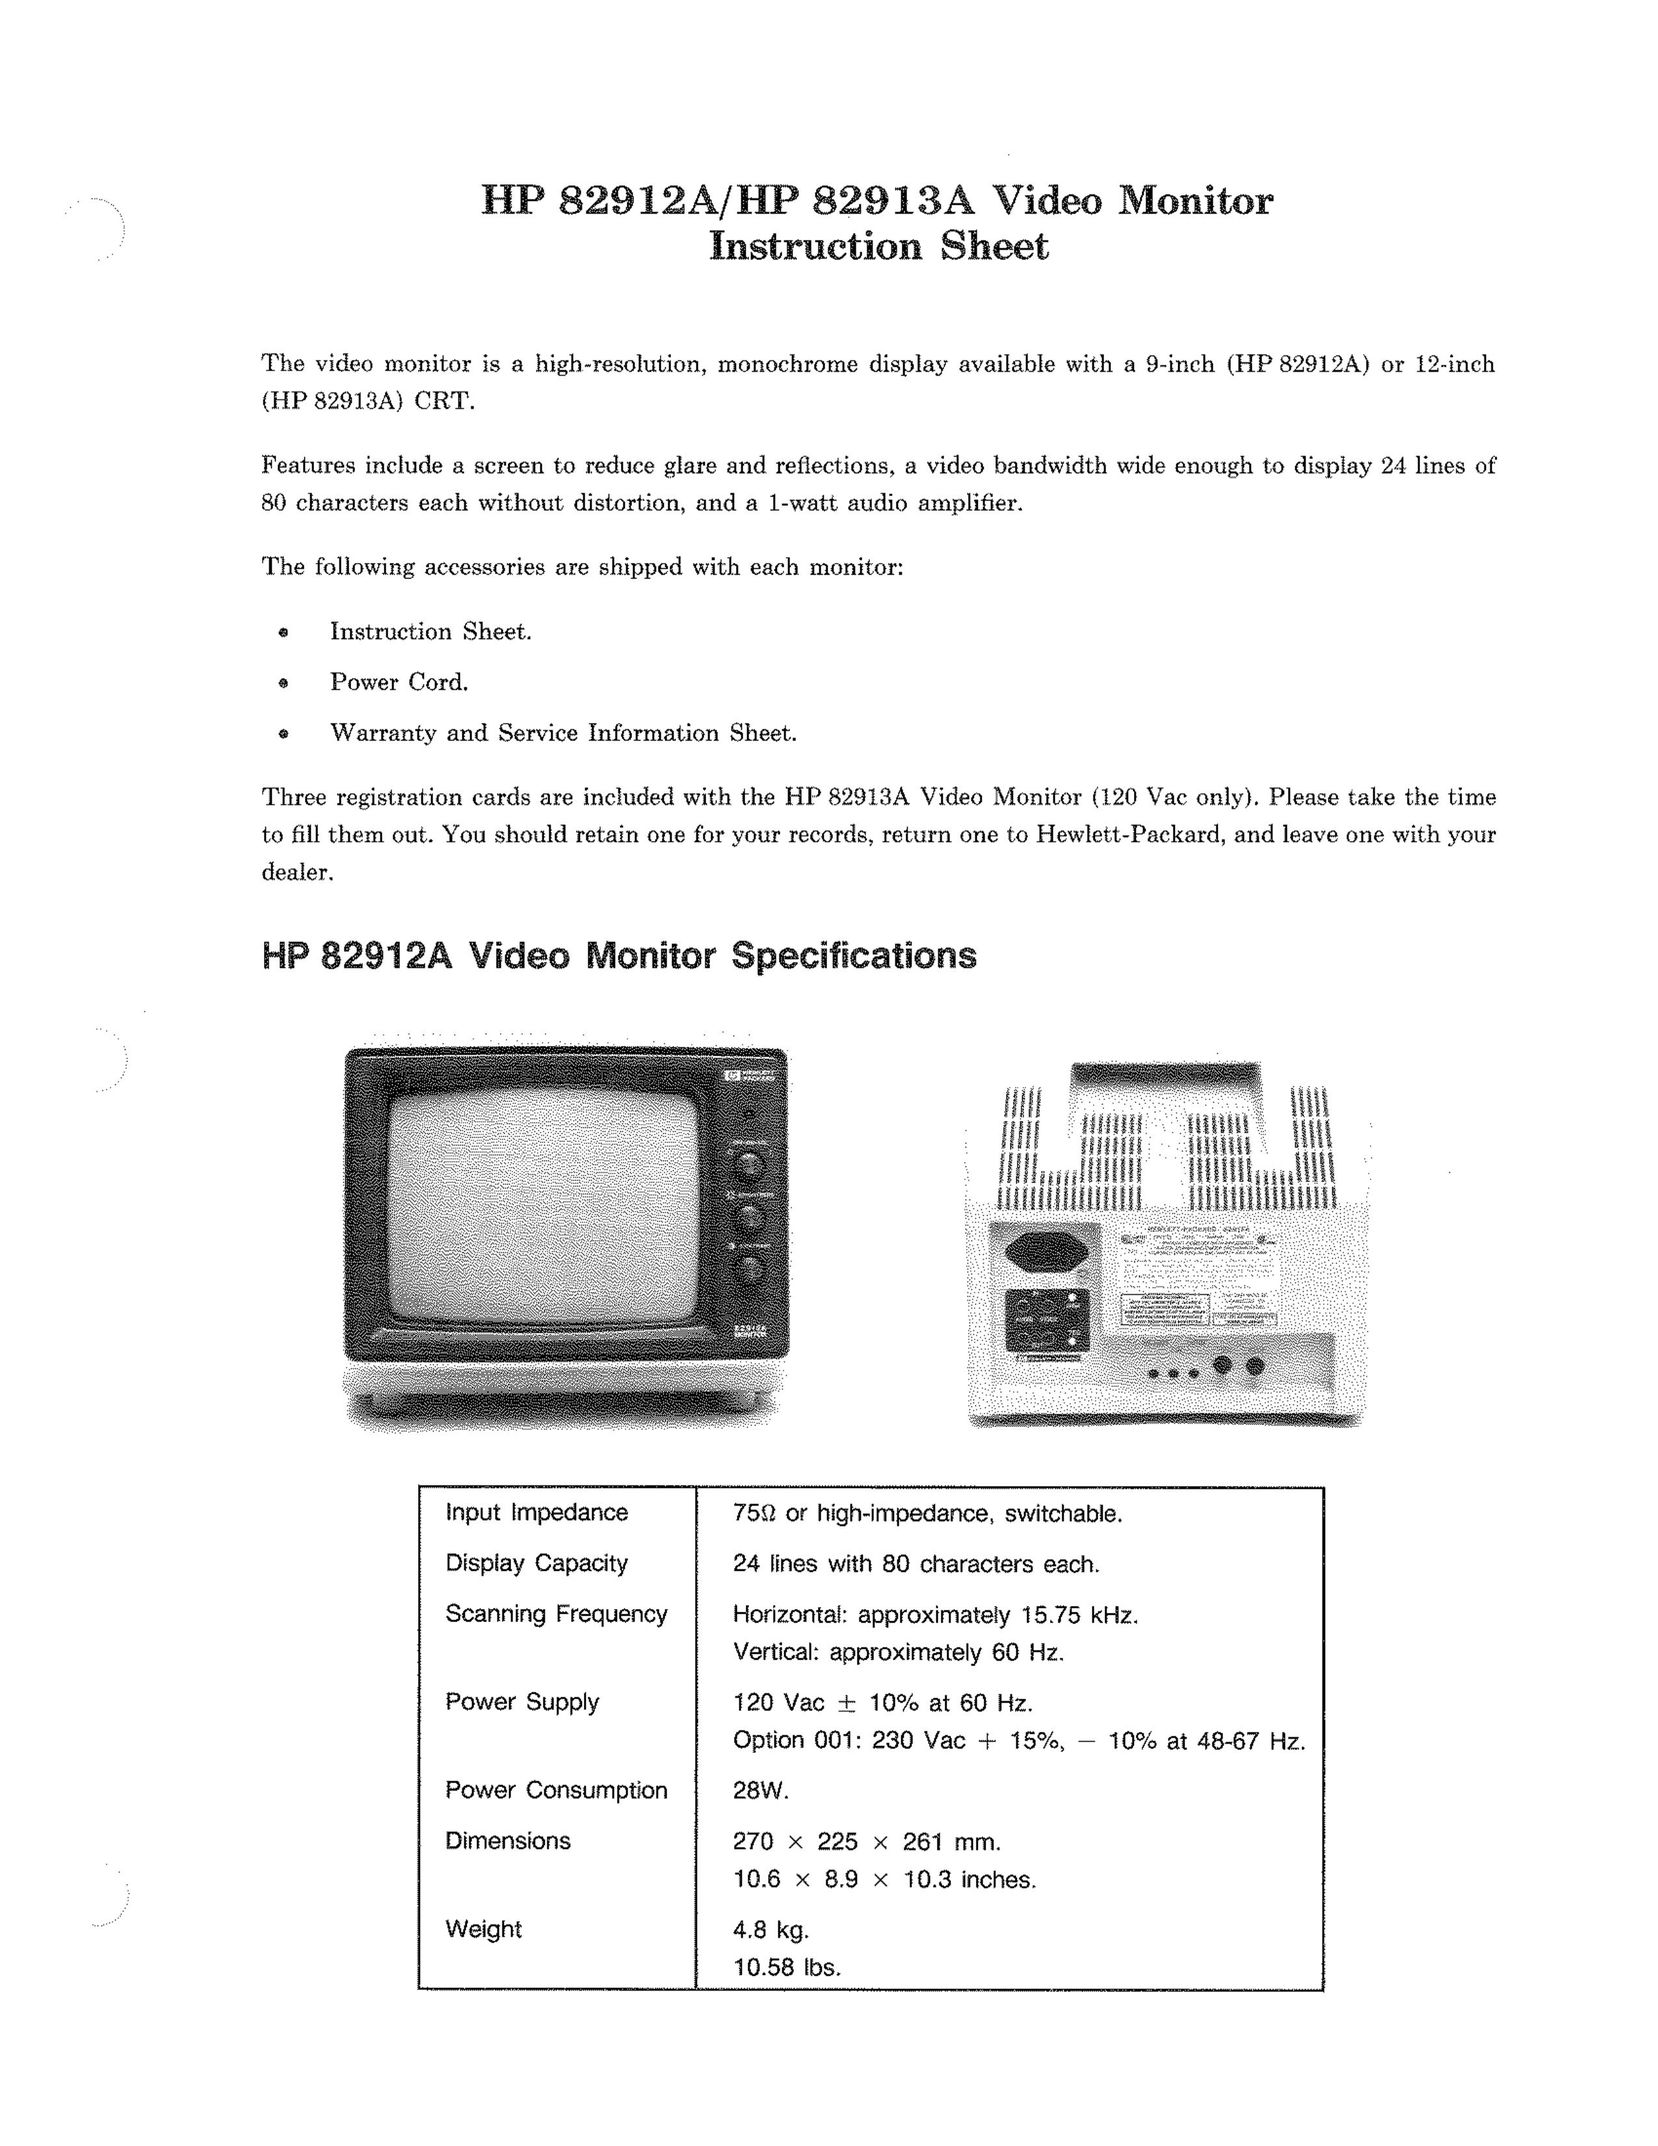 HP (Hewlett-Packard) 82913A Car Video System User Manual